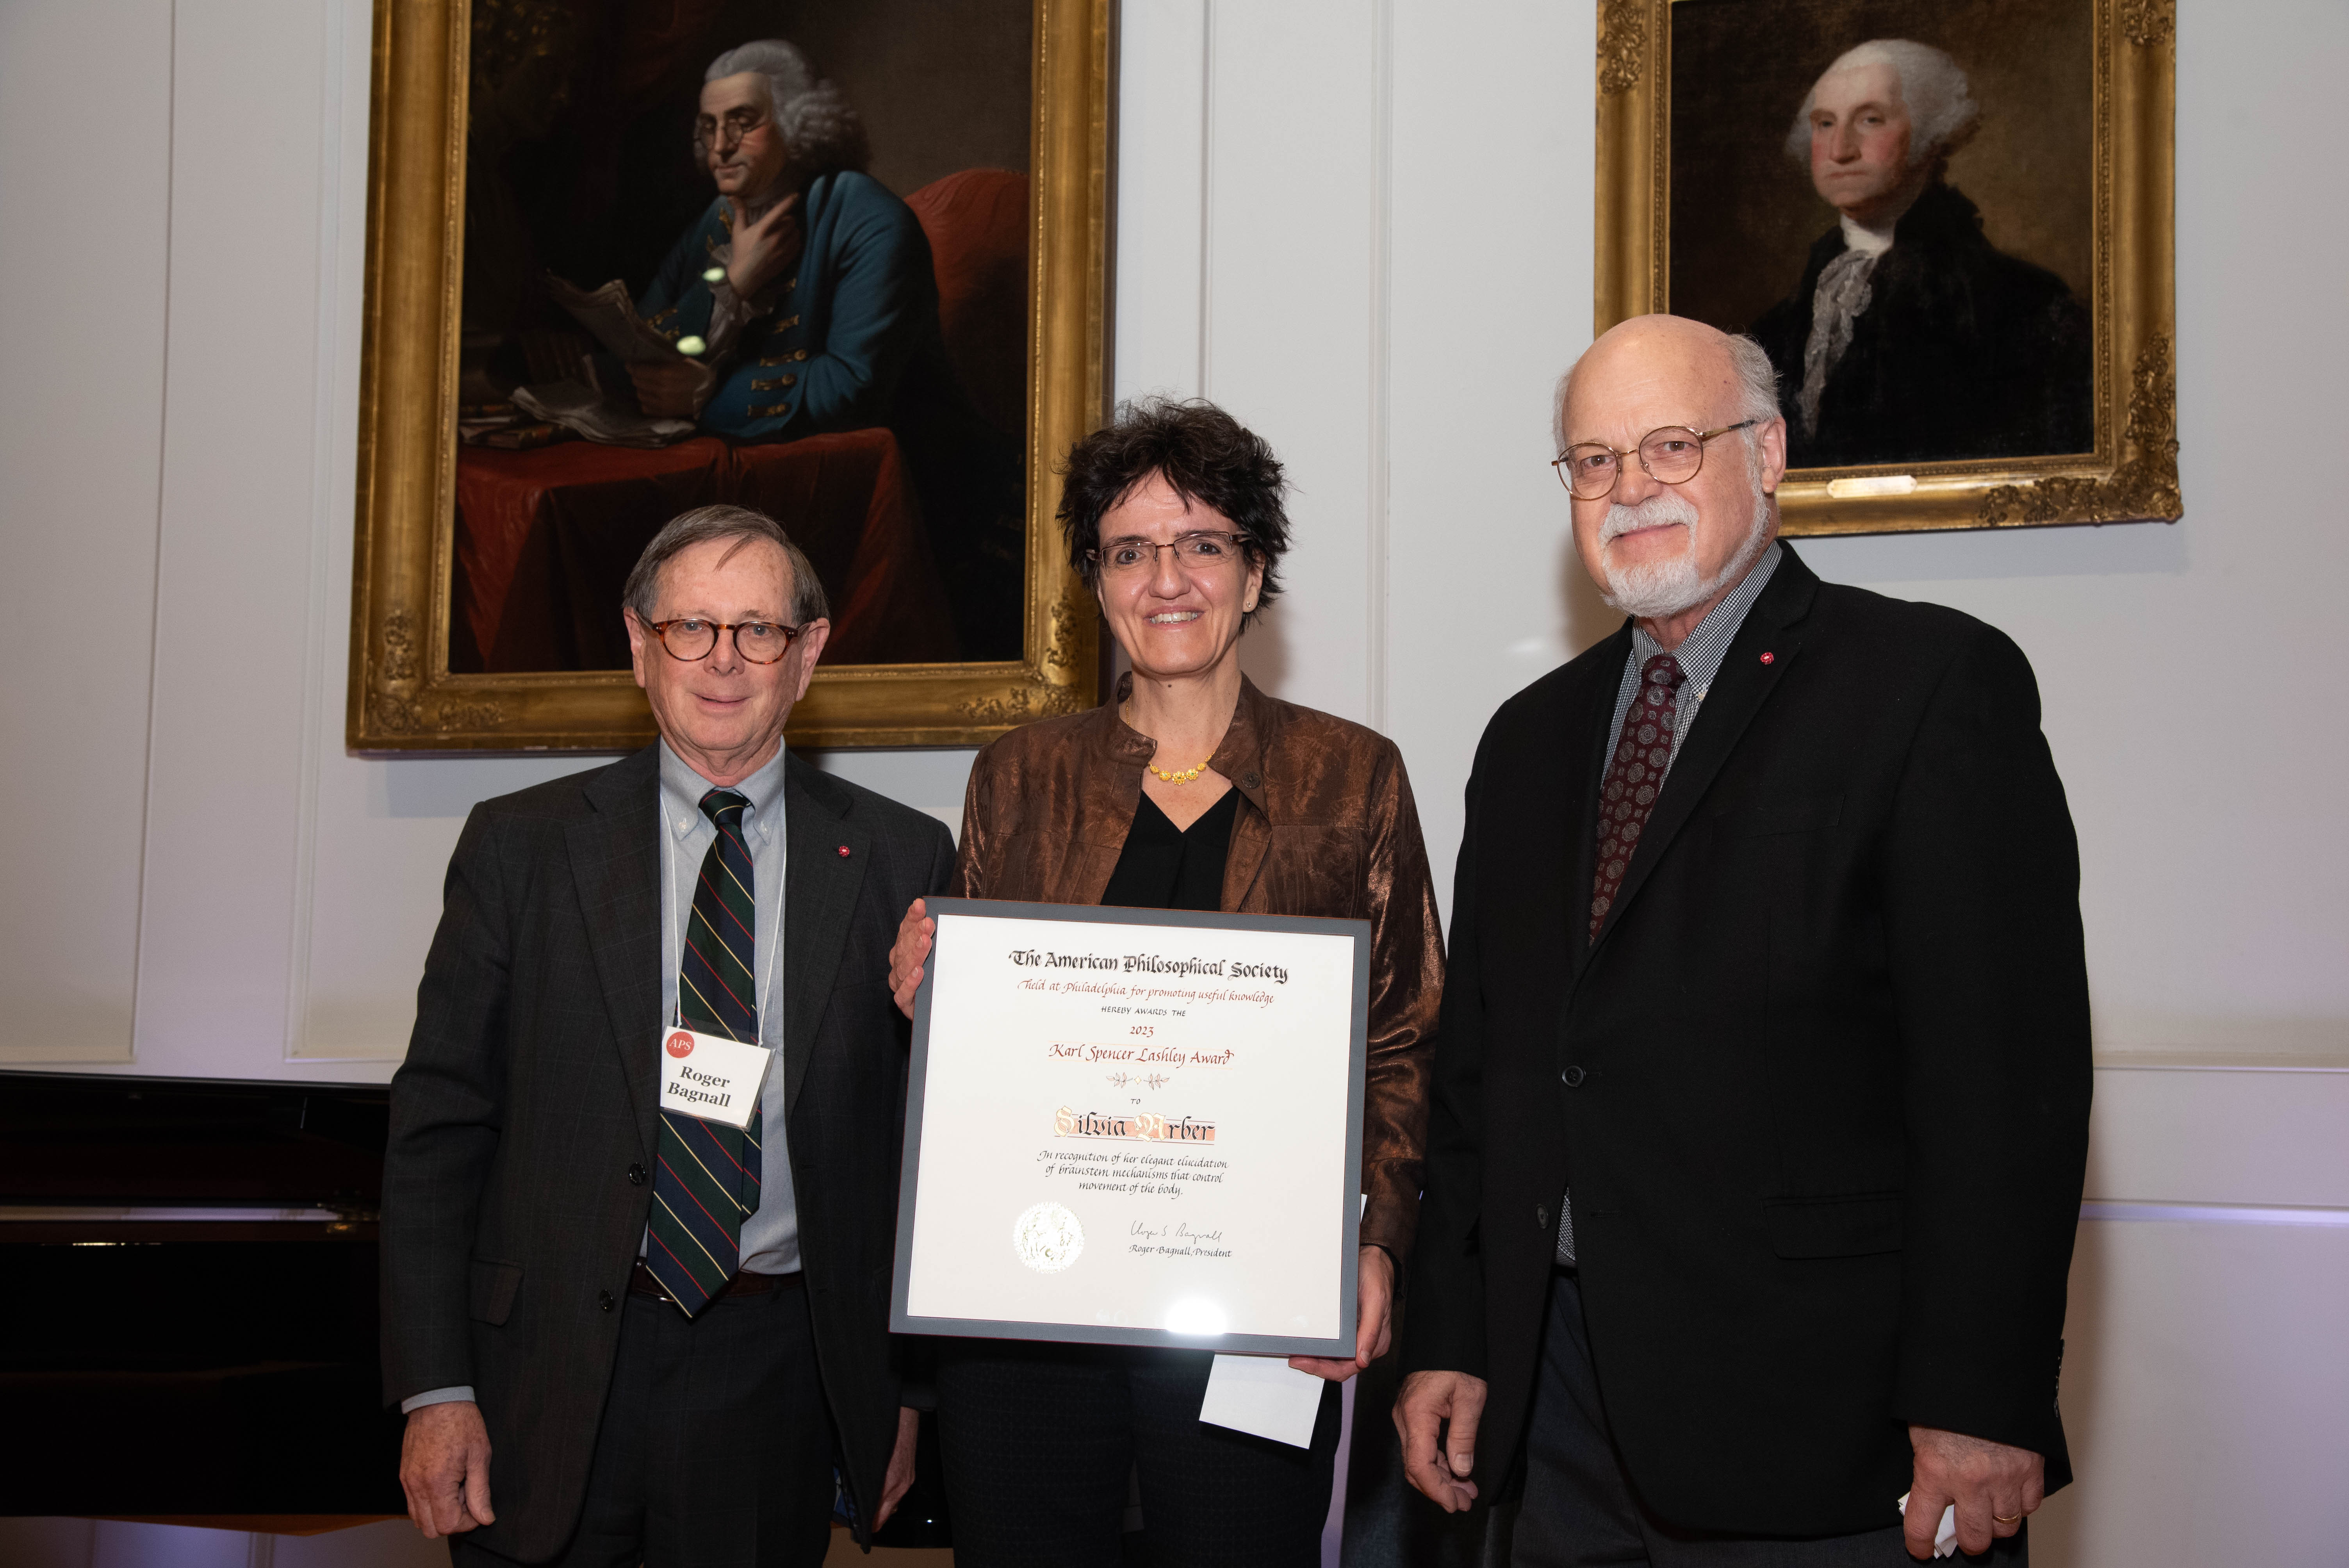 Prize certificate awarded to Professor Arber